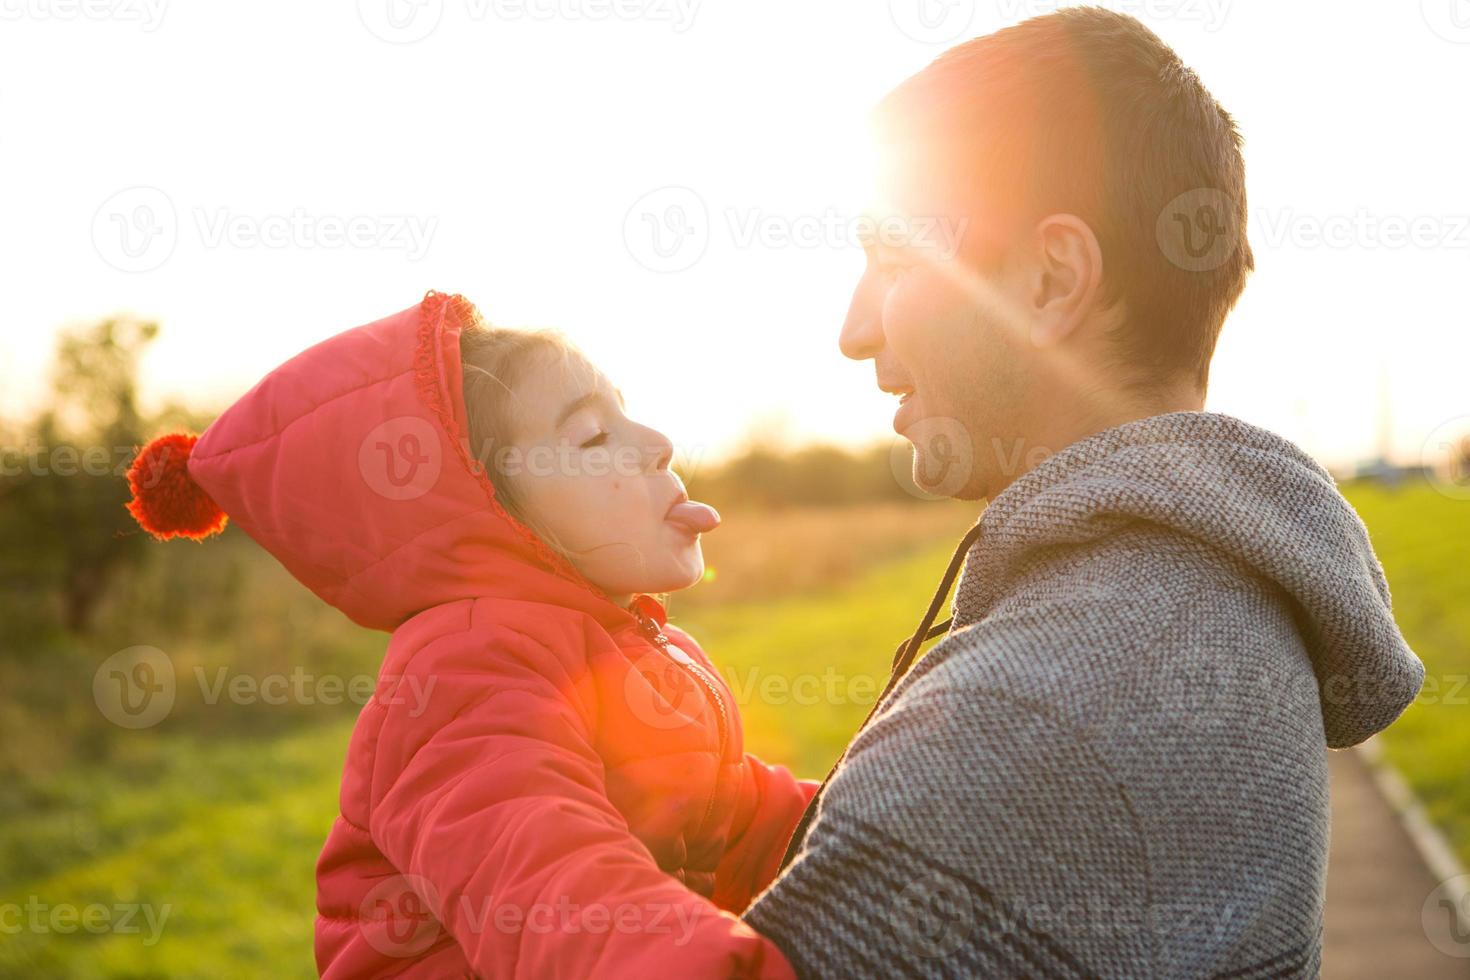 niñita con chaqueta roja con capucha abraza y saca la lengua a su padre, sonríe. familia feliz, emociones de los niños, día del padre, rayos brillantes del sol, apariencia caucásica. espacio para texto. foto